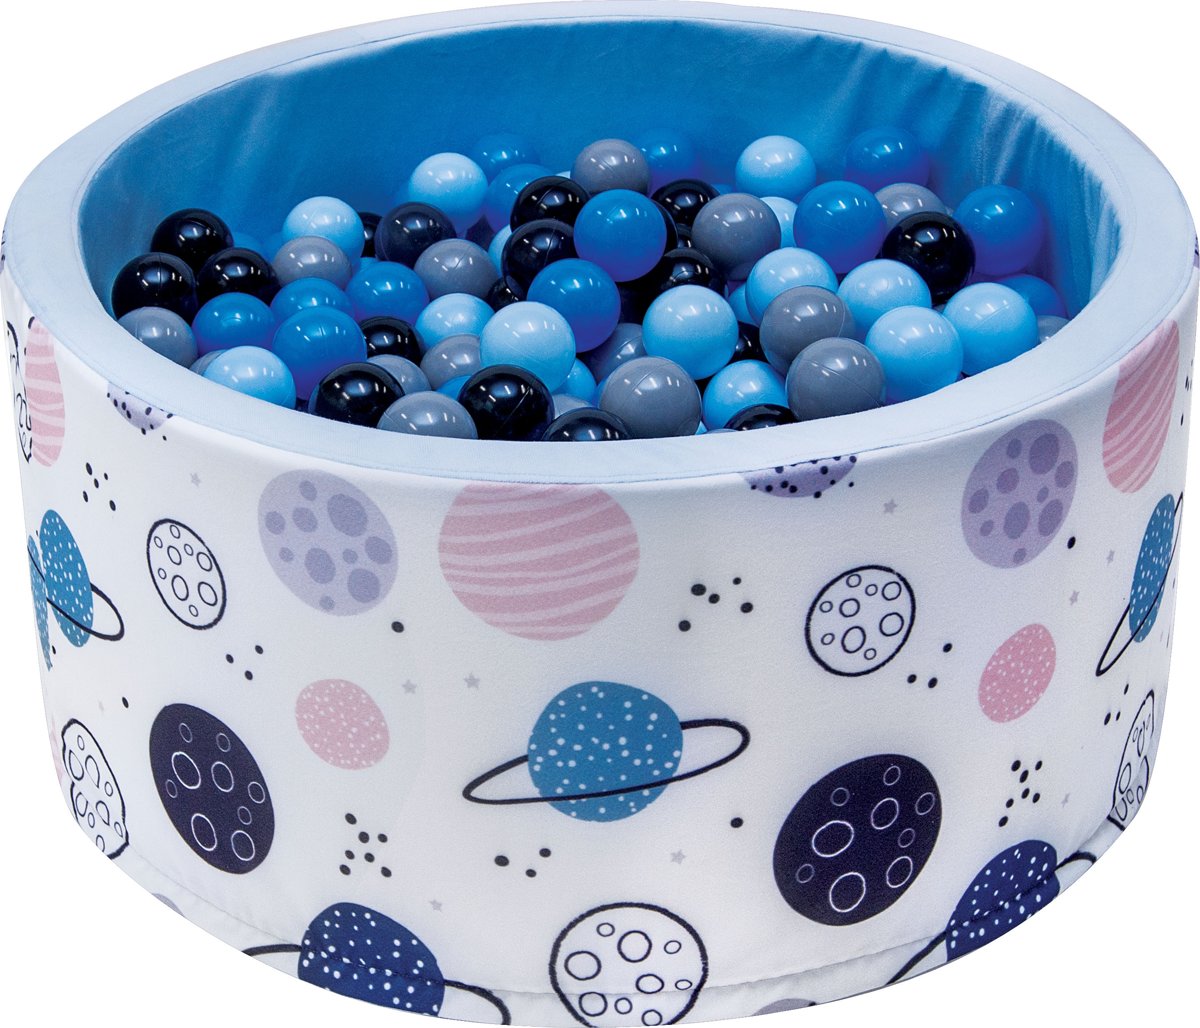 Ballenbak | Planeten incl.  200 zwarte, blauwe, grijze en blauwe ballen